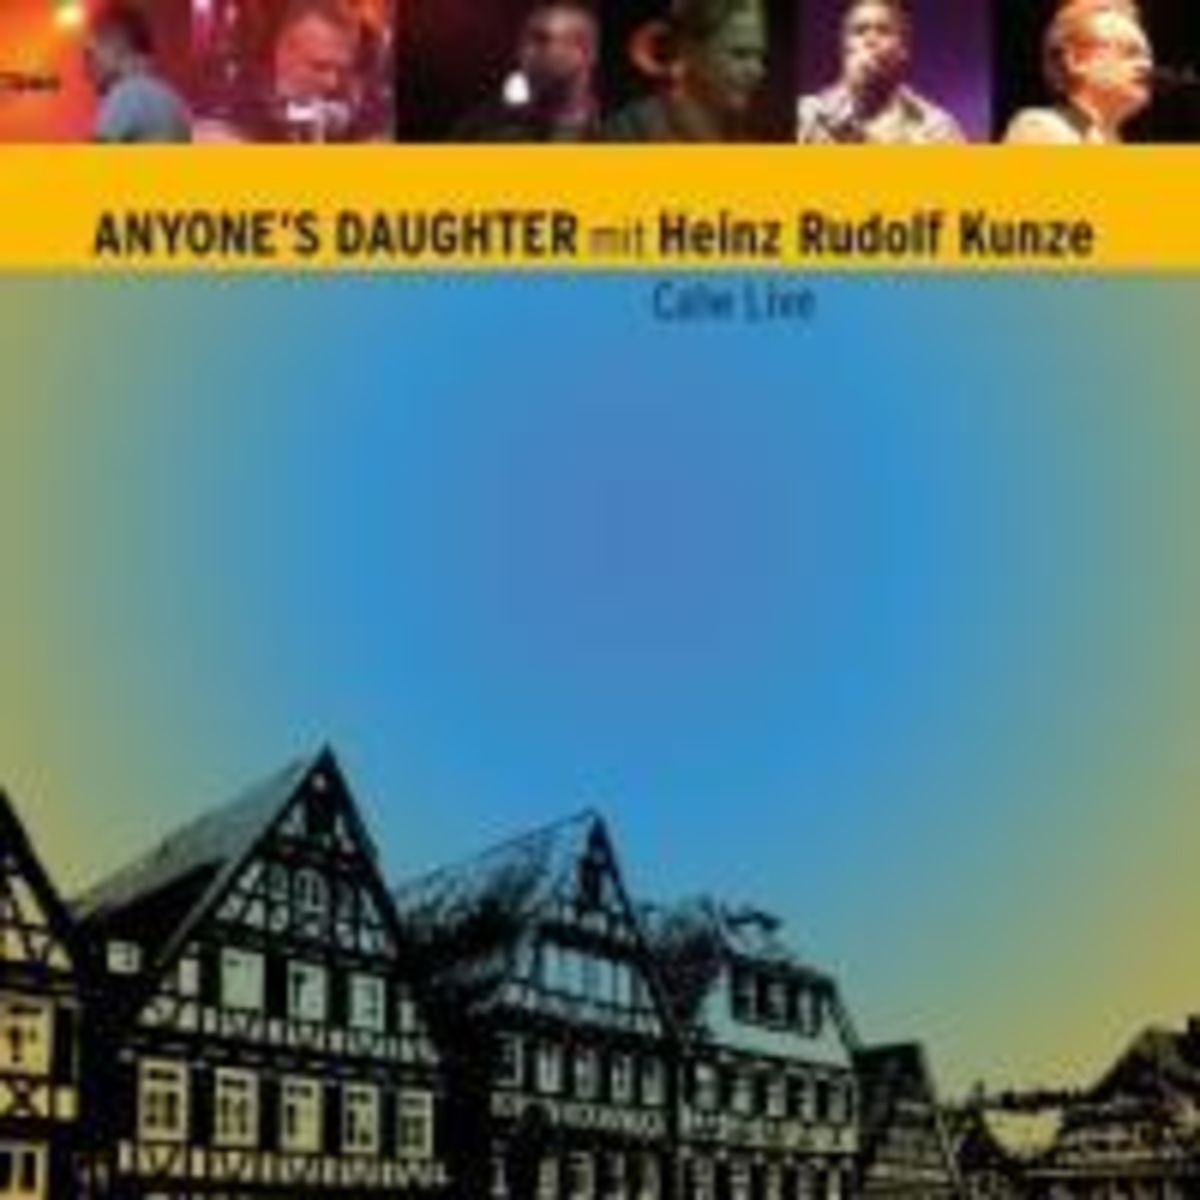 Calw Live' von 'Anyones Daughter' auf 'CD' - Musik